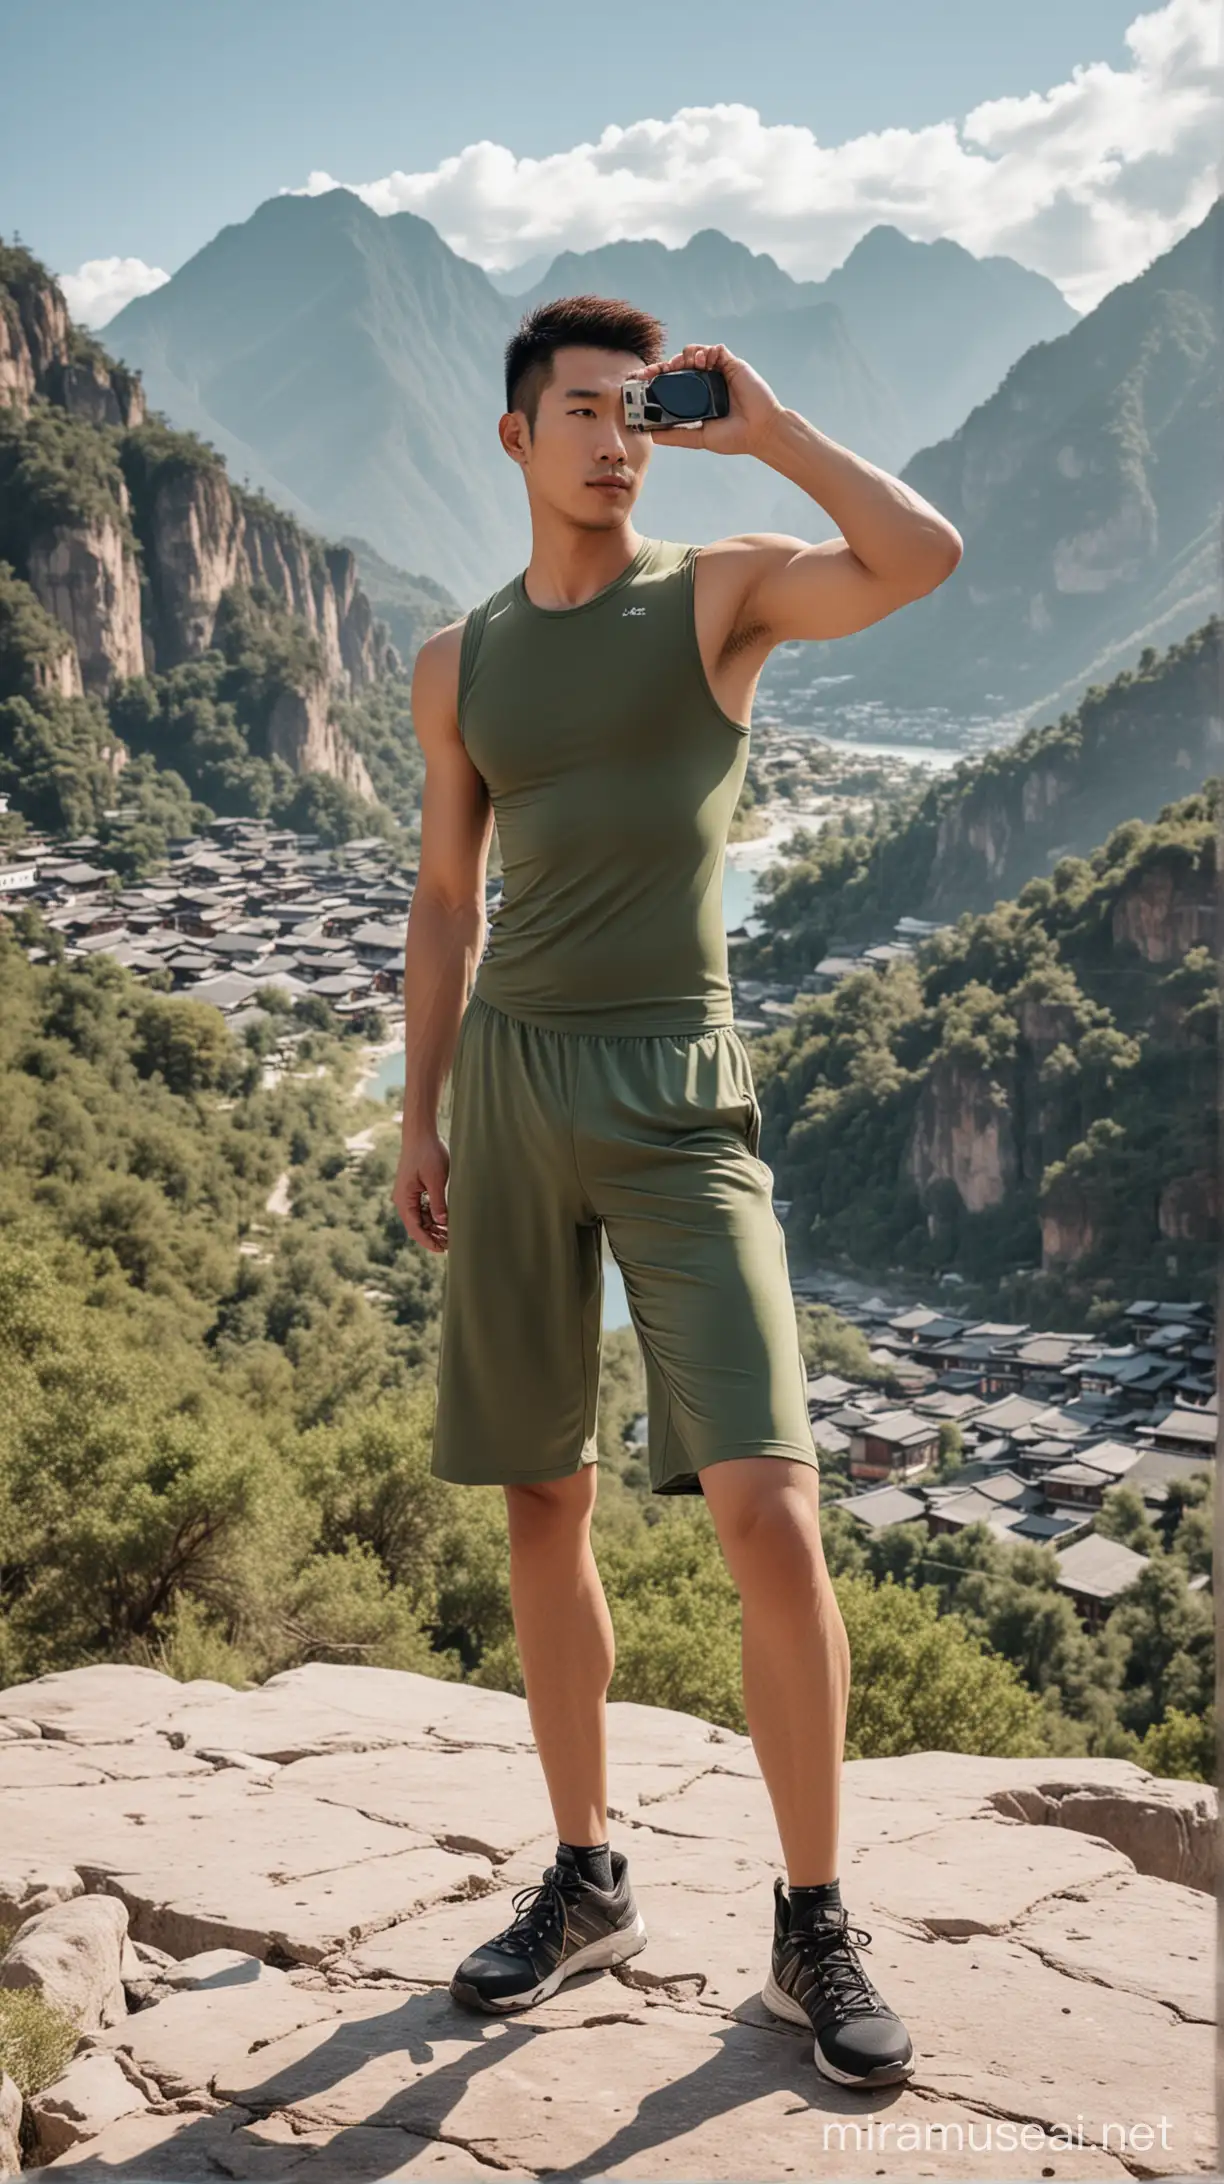 一位穿紧身运动装身材高大魁梧的中国帅哥在丽江景区拍写真